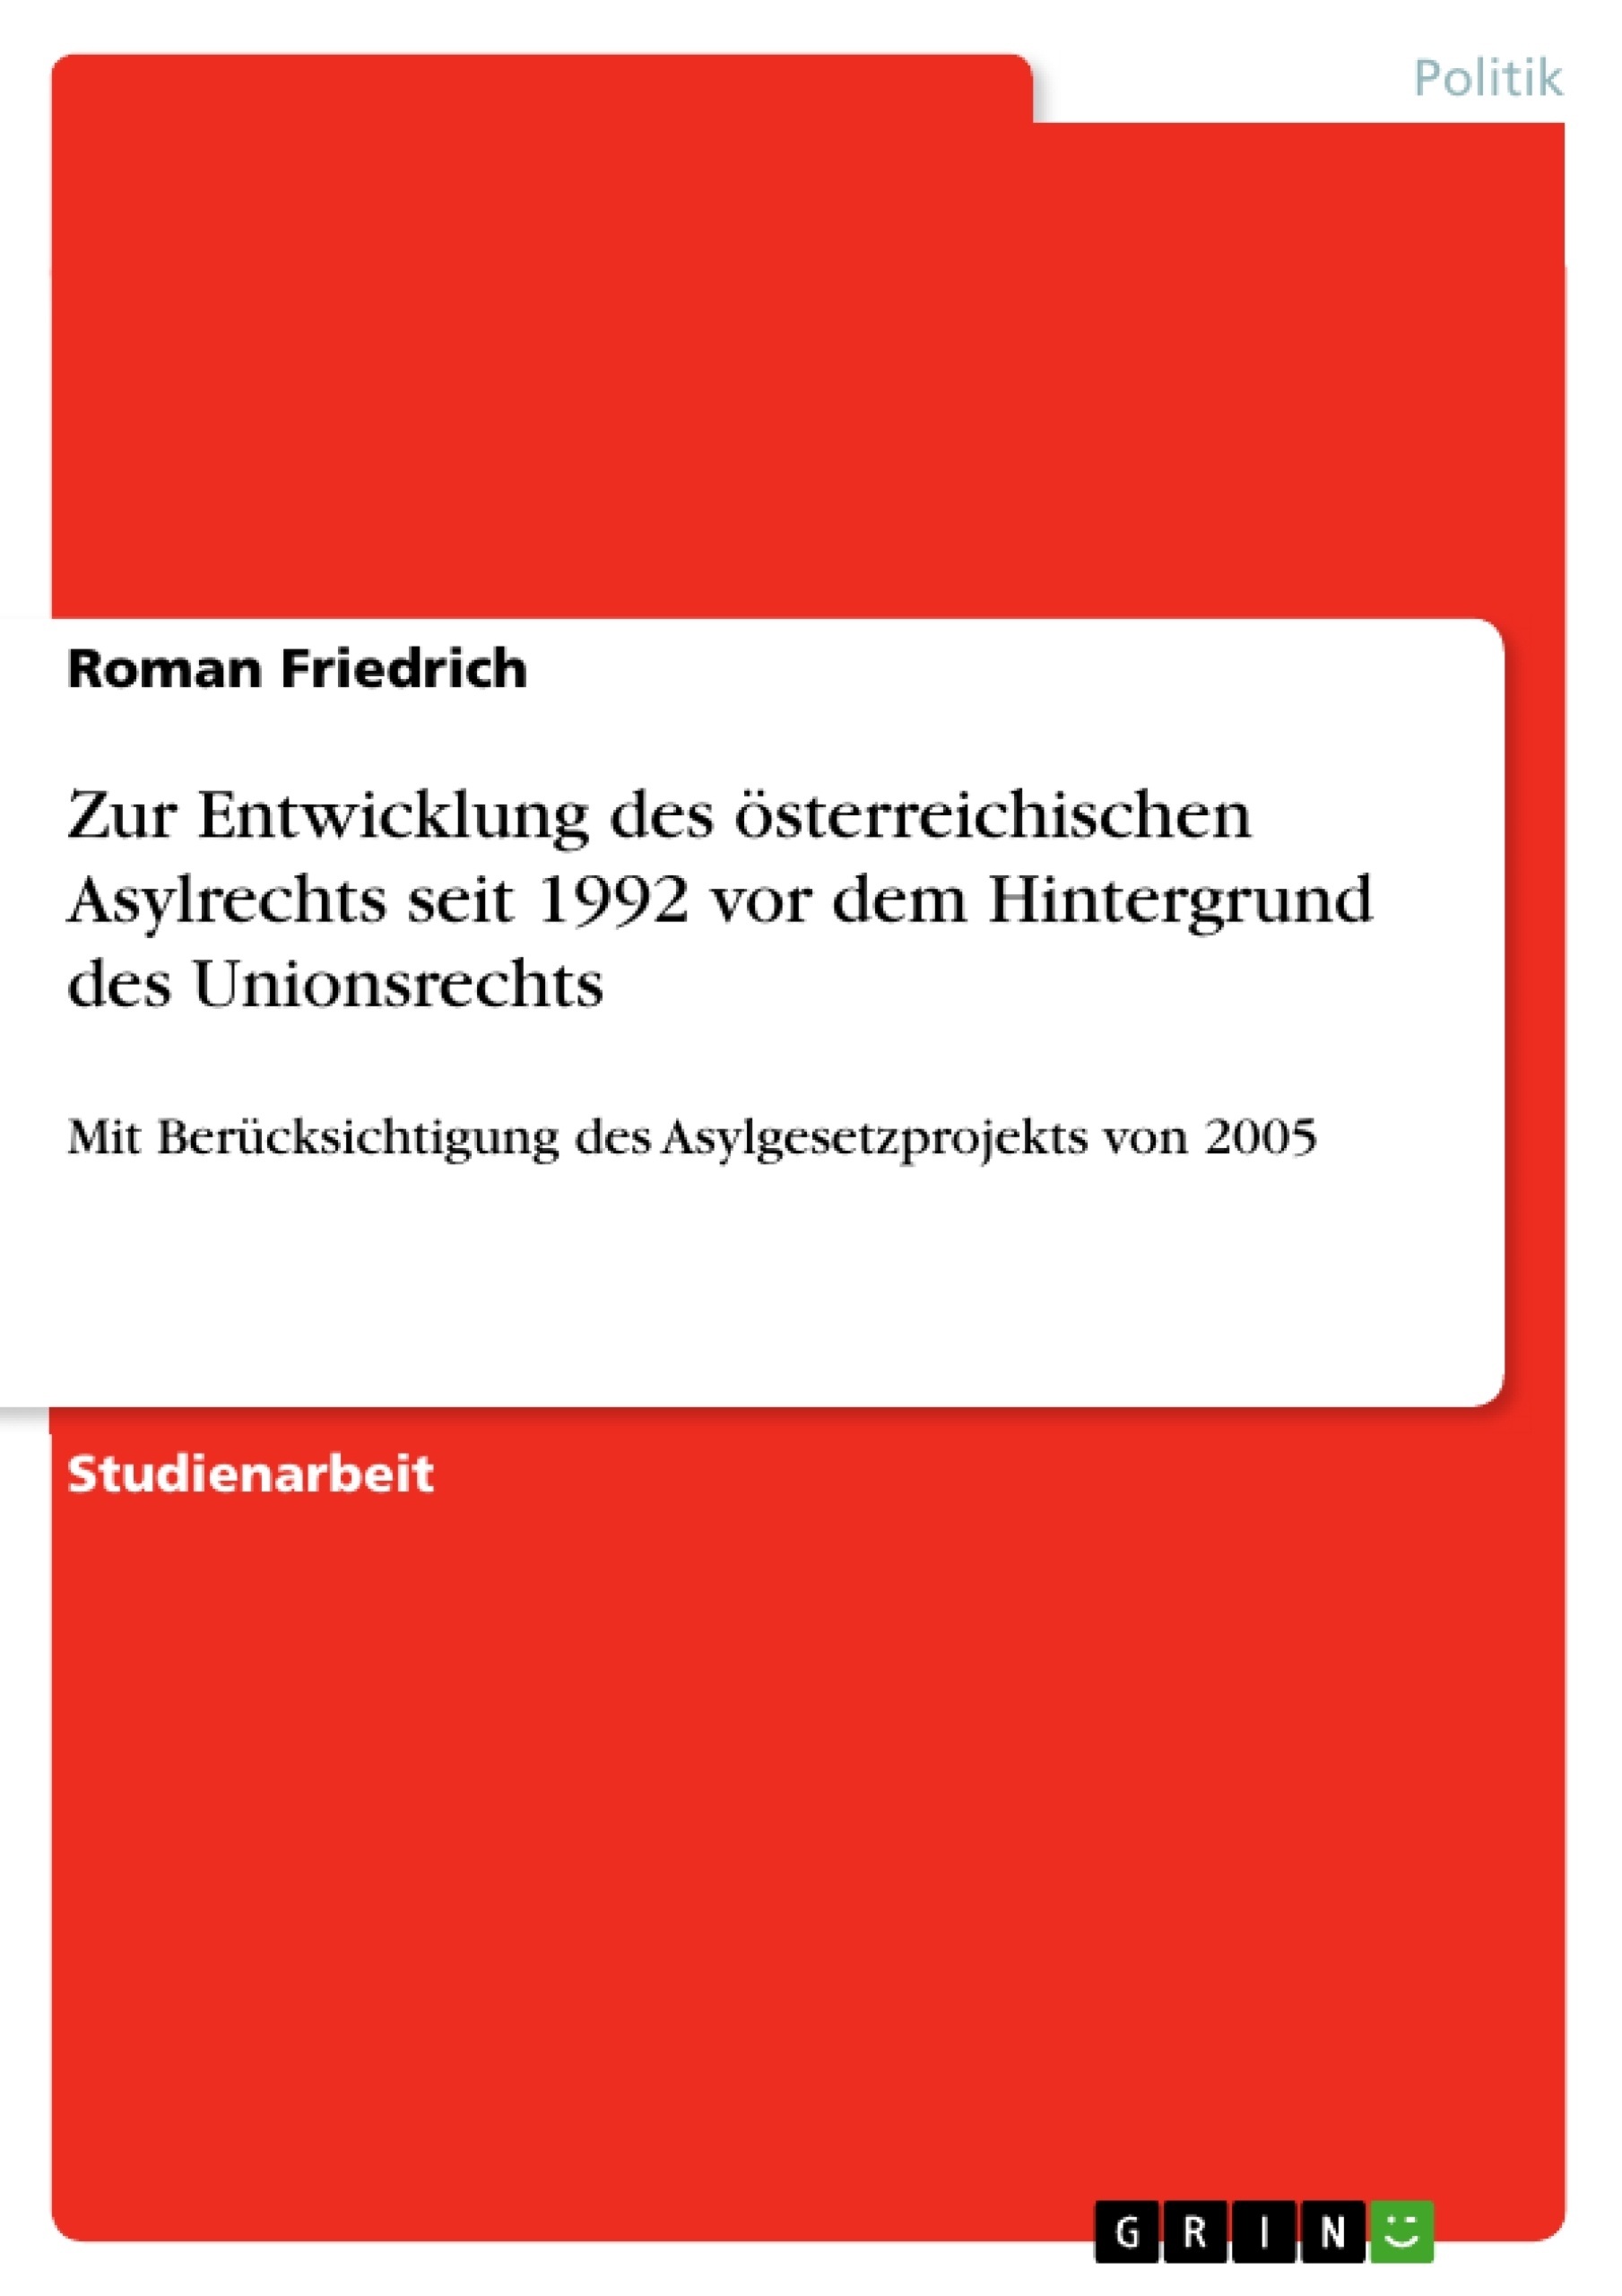 Titre: Zur Entwicklung des österreichischen Asylrechts seit 1992 vor dem Hintergrund des Unionsrechts